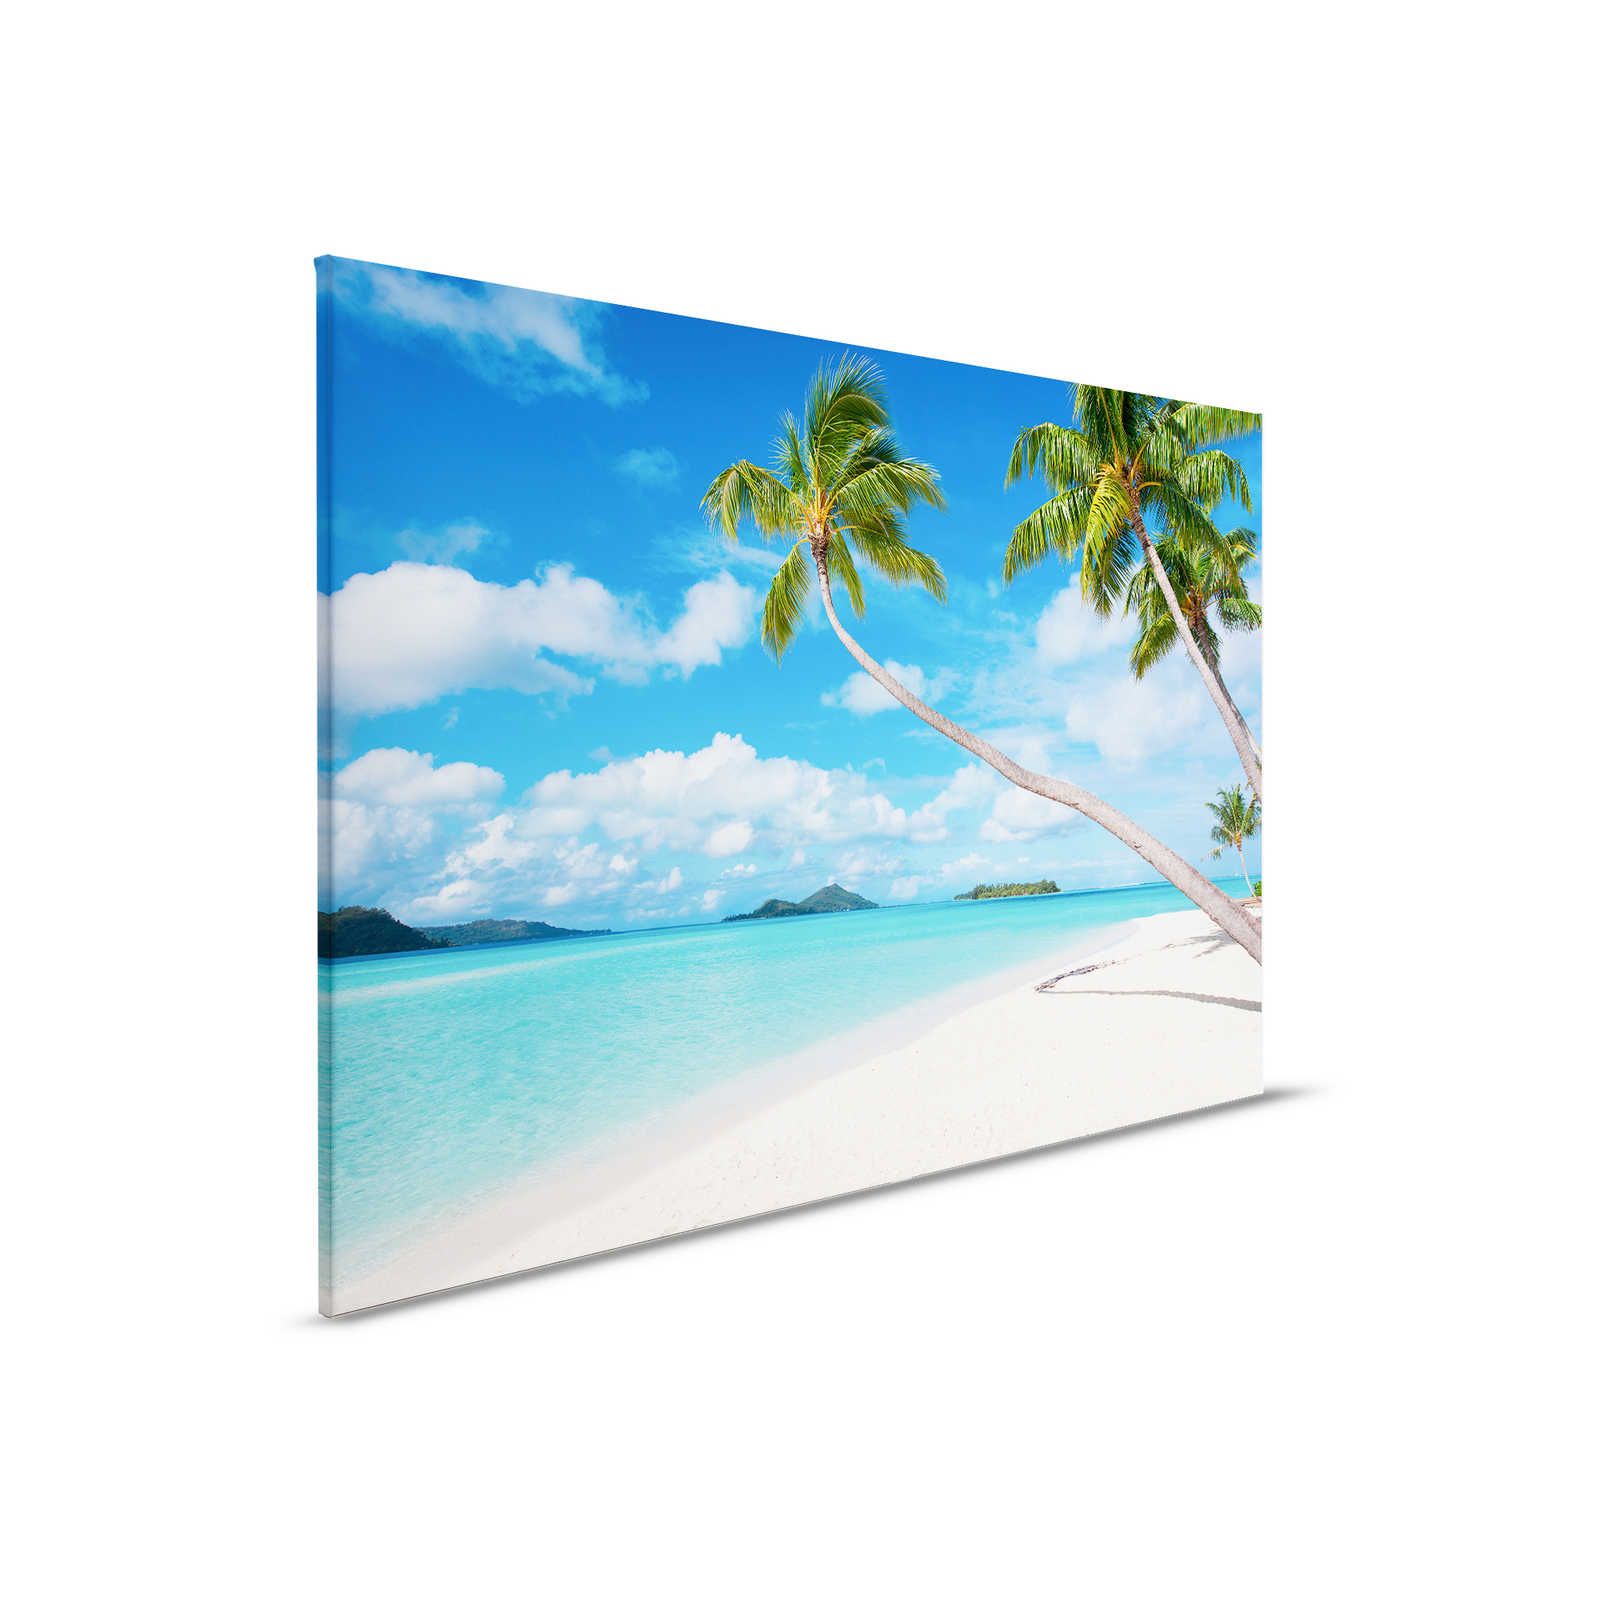         Leinwandbild Idyllischer Strand mit klarem Wasser und Palmen – 0,90 m x 0,60 m
    